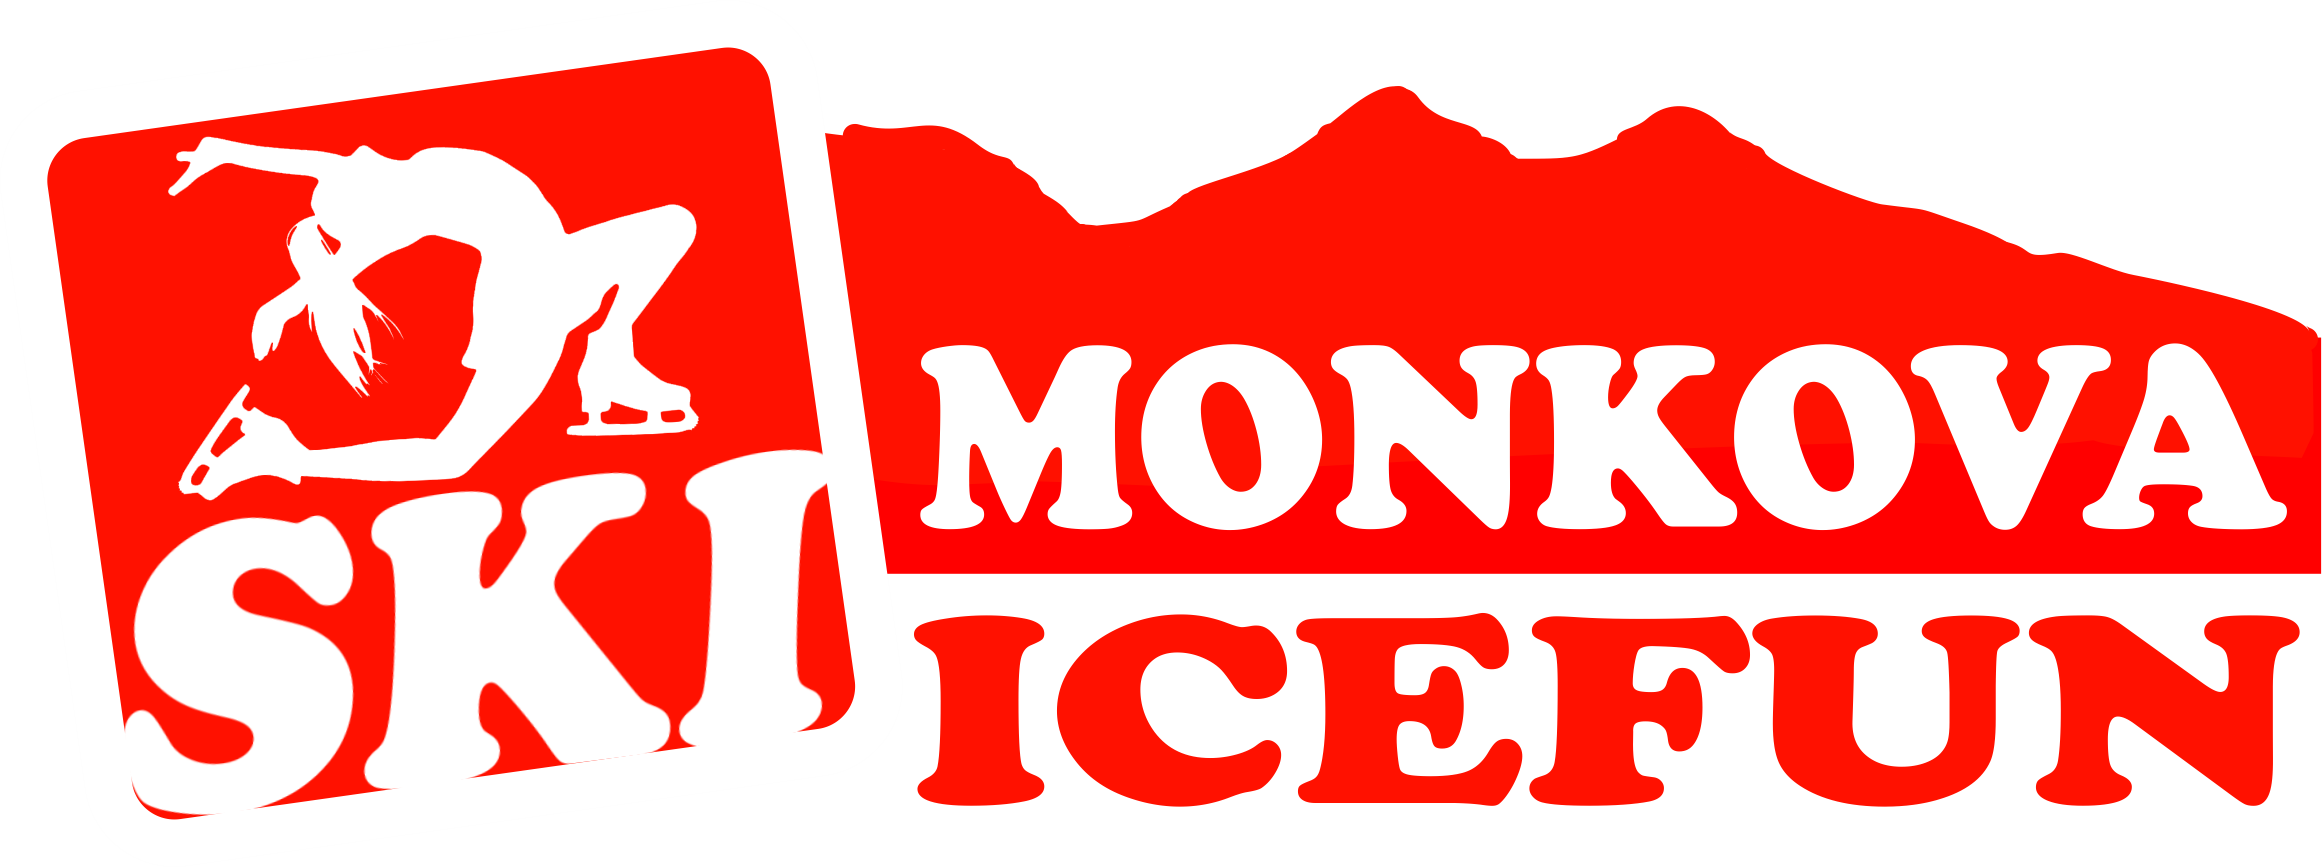 SKI MONKOVA ICEFUN